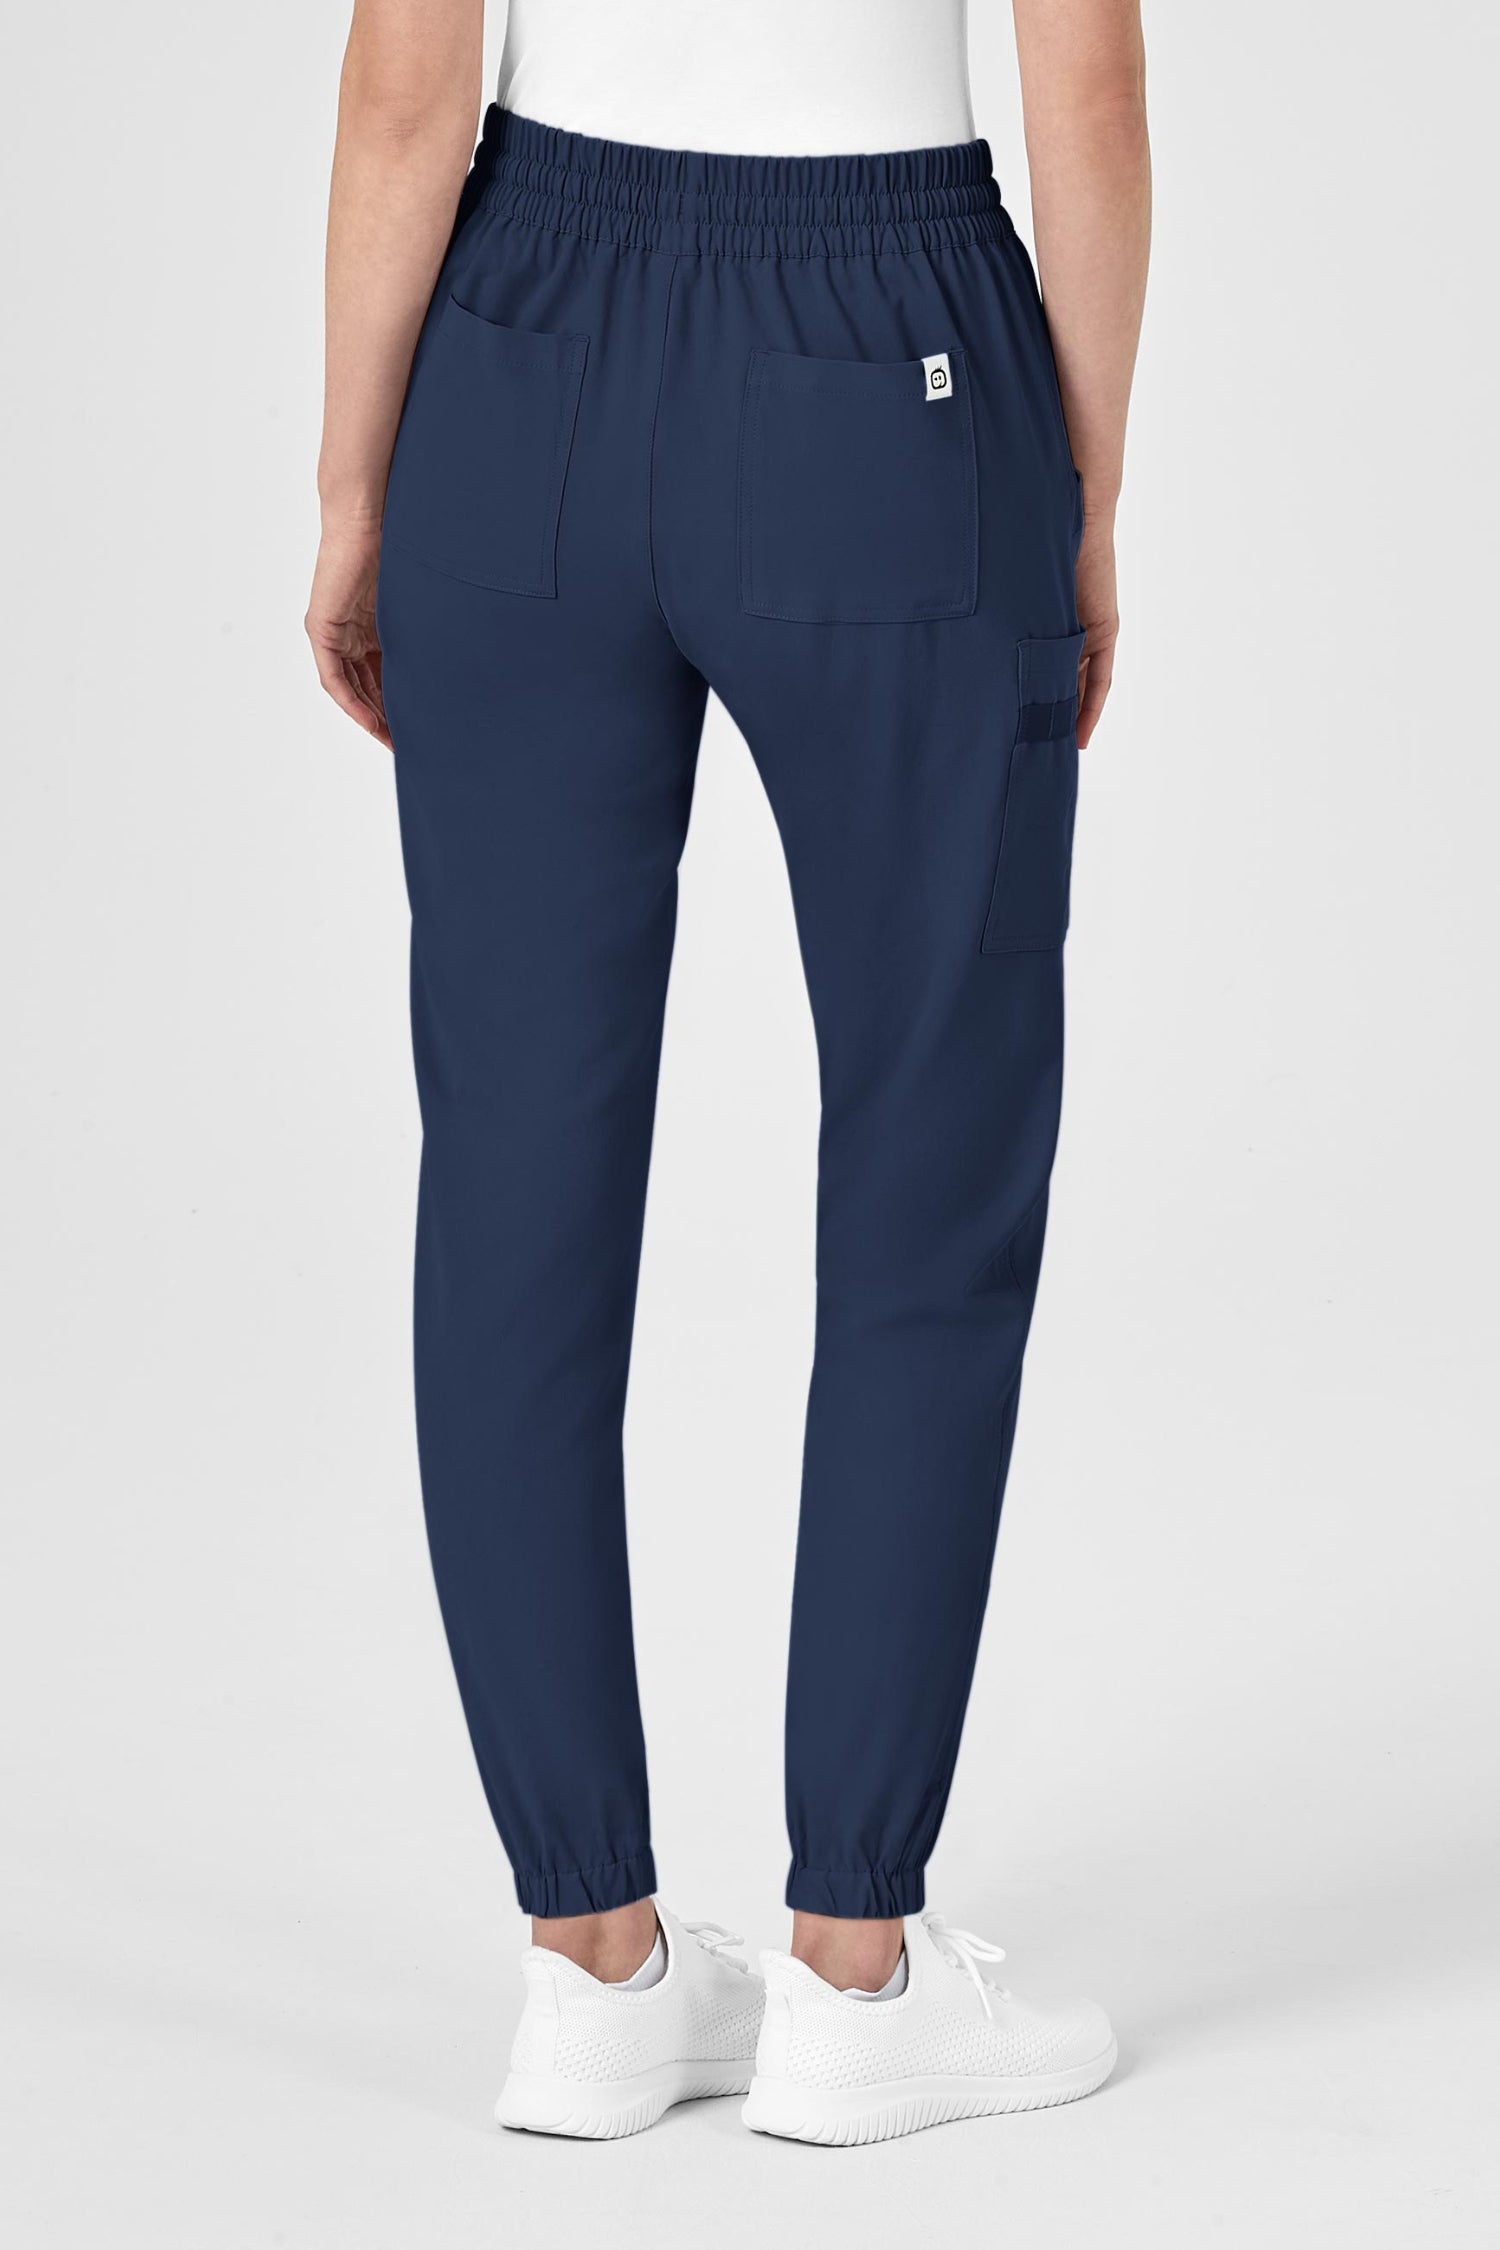 Pantalon médical pour femme bleu marine avec coupe moderne et poches cargo classiques